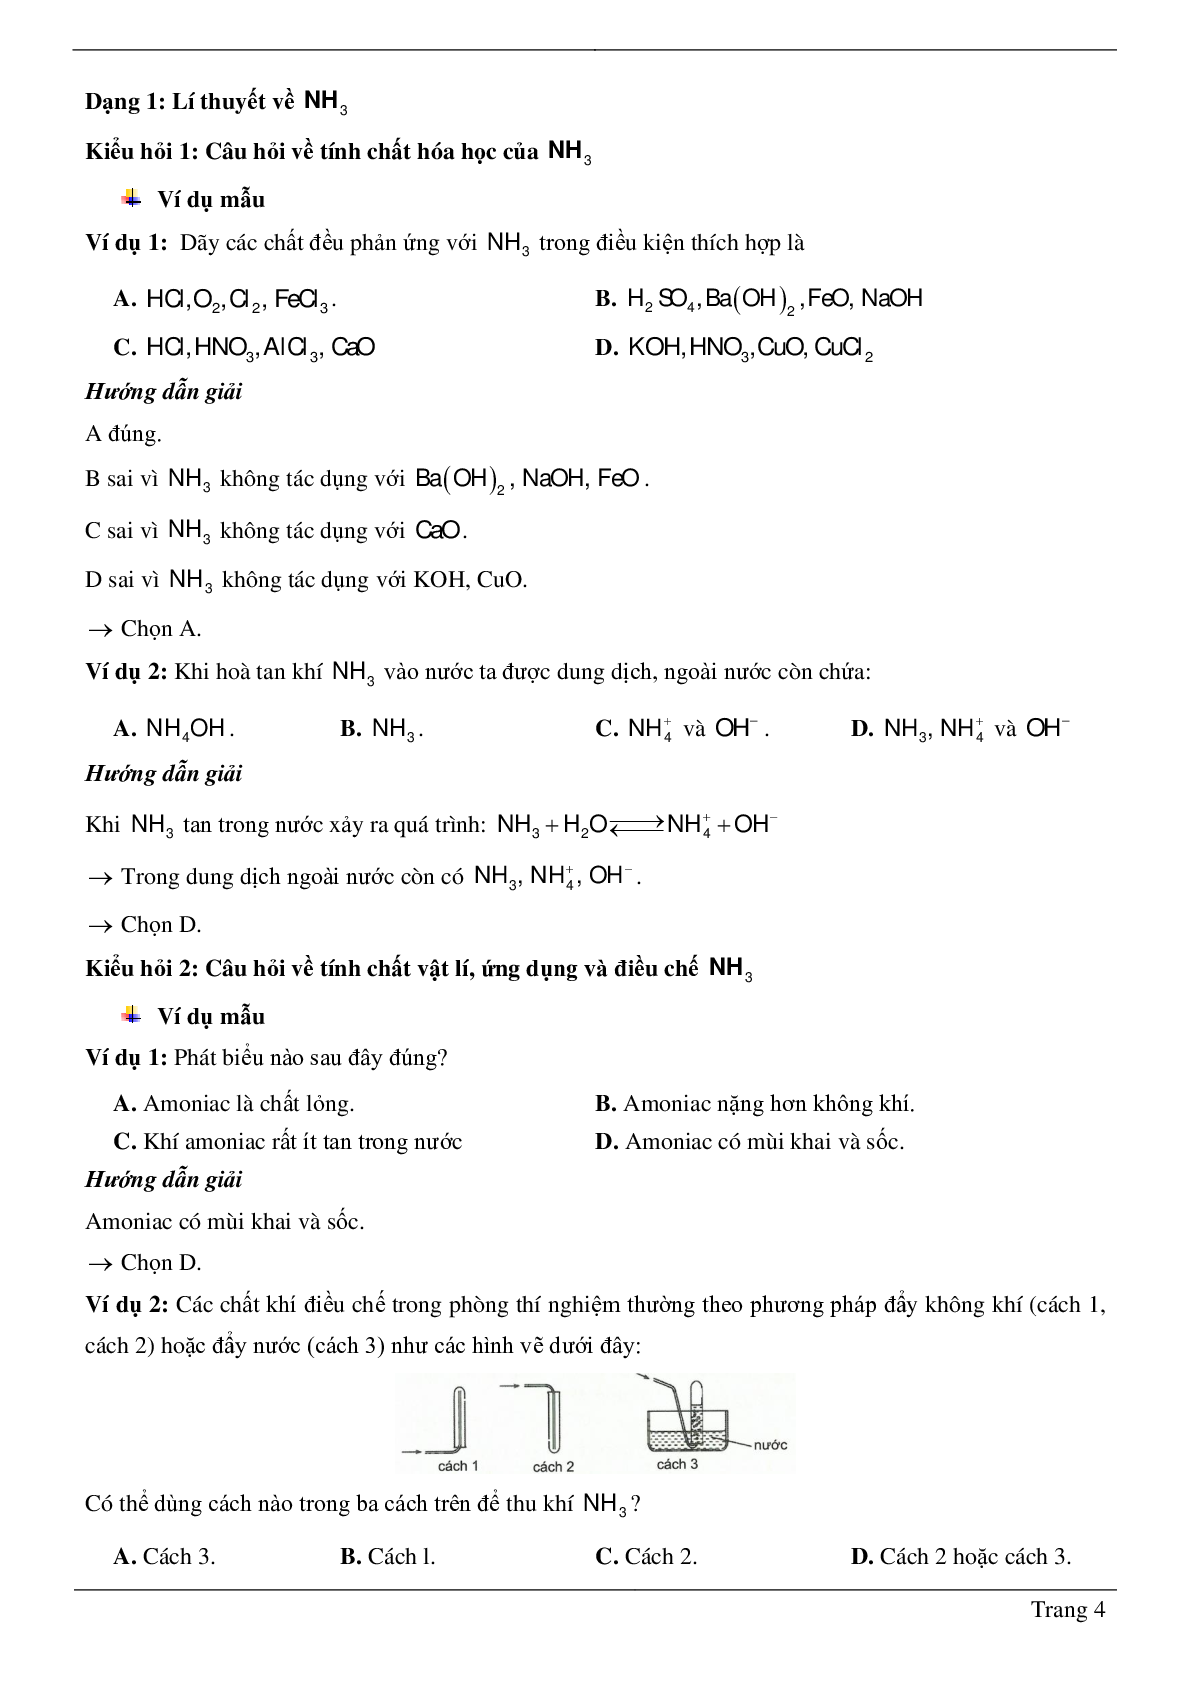 Chuyên đề Amoniac và muối amoni 2023 hay, chọn lọc (trang 4)